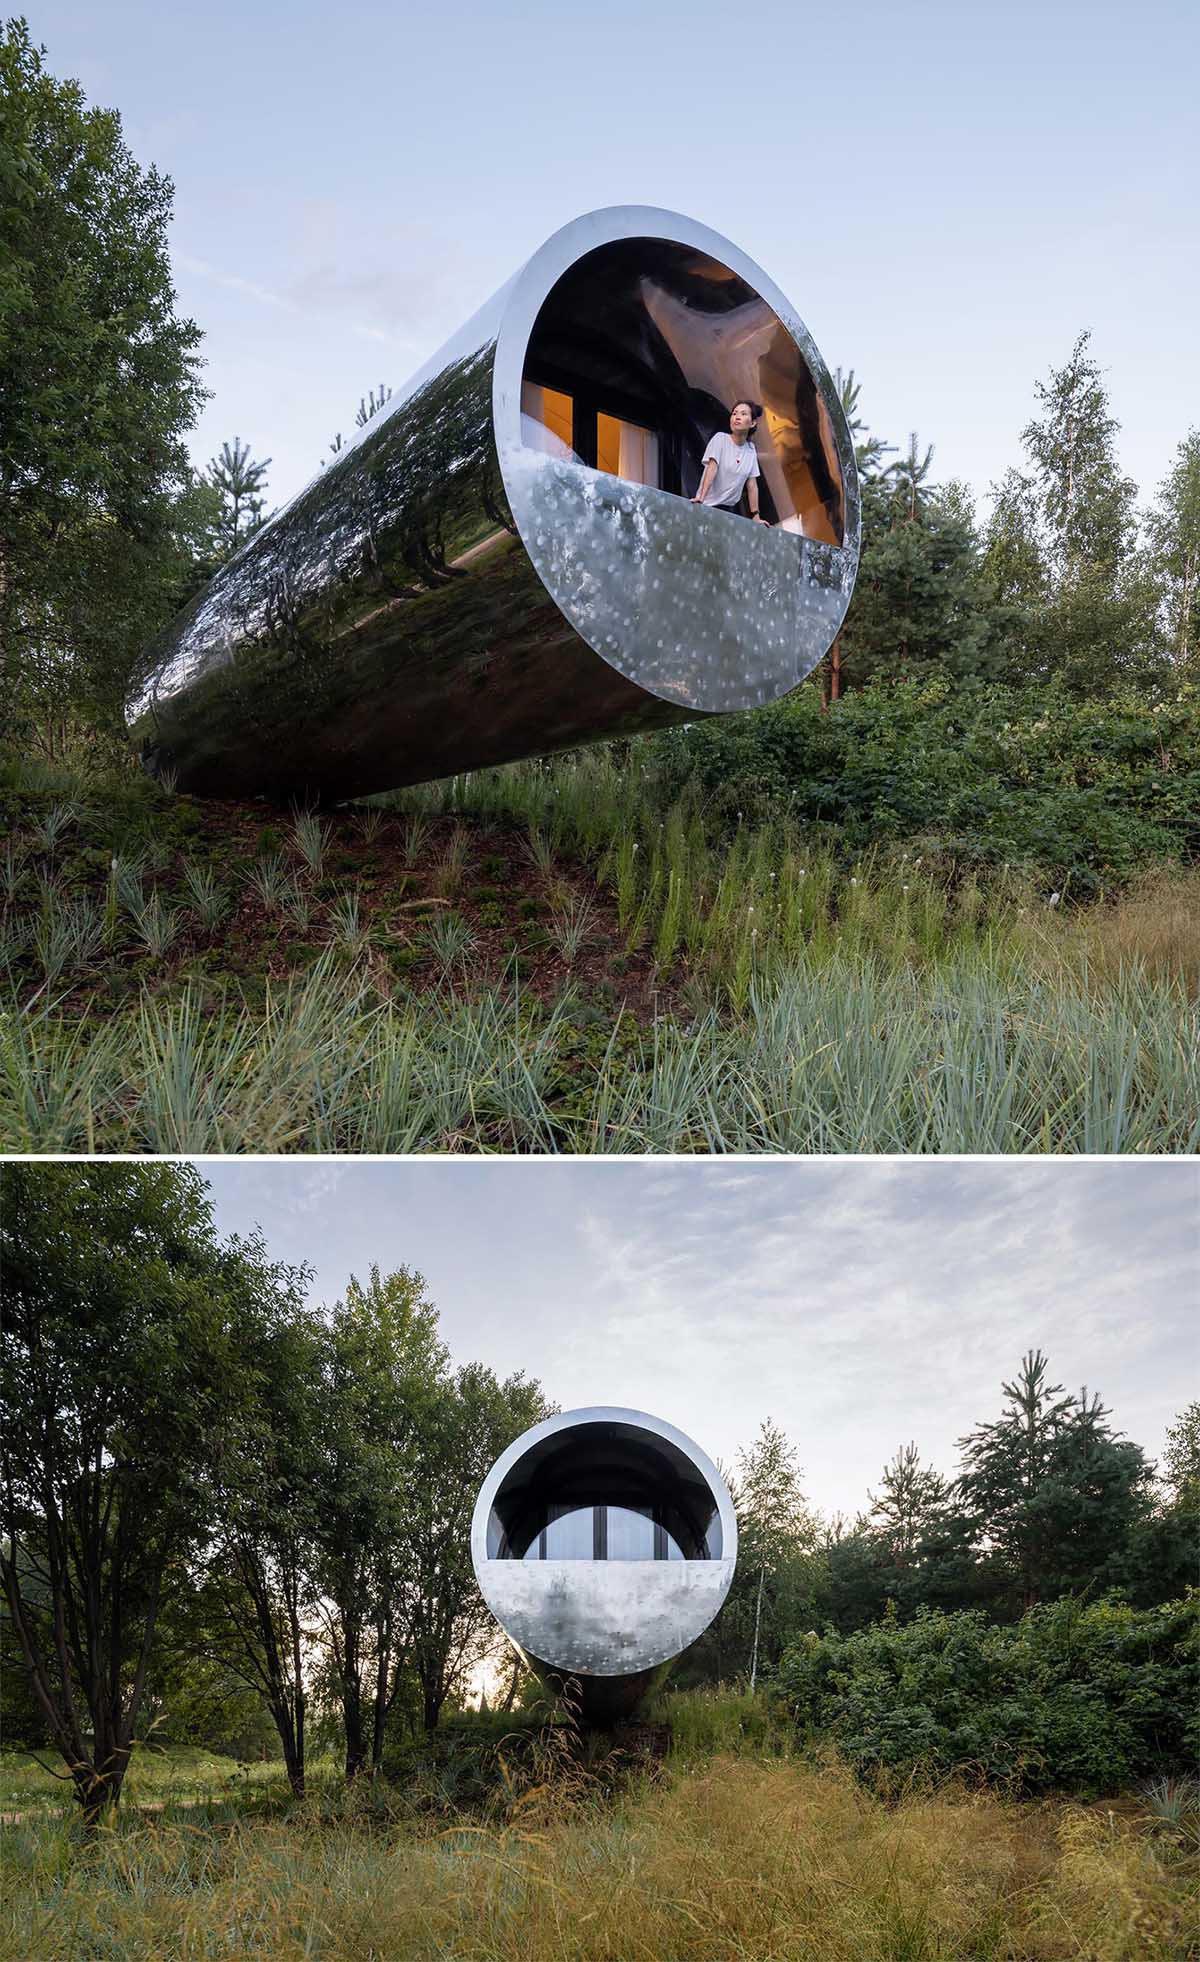 cabana em forma de tubo